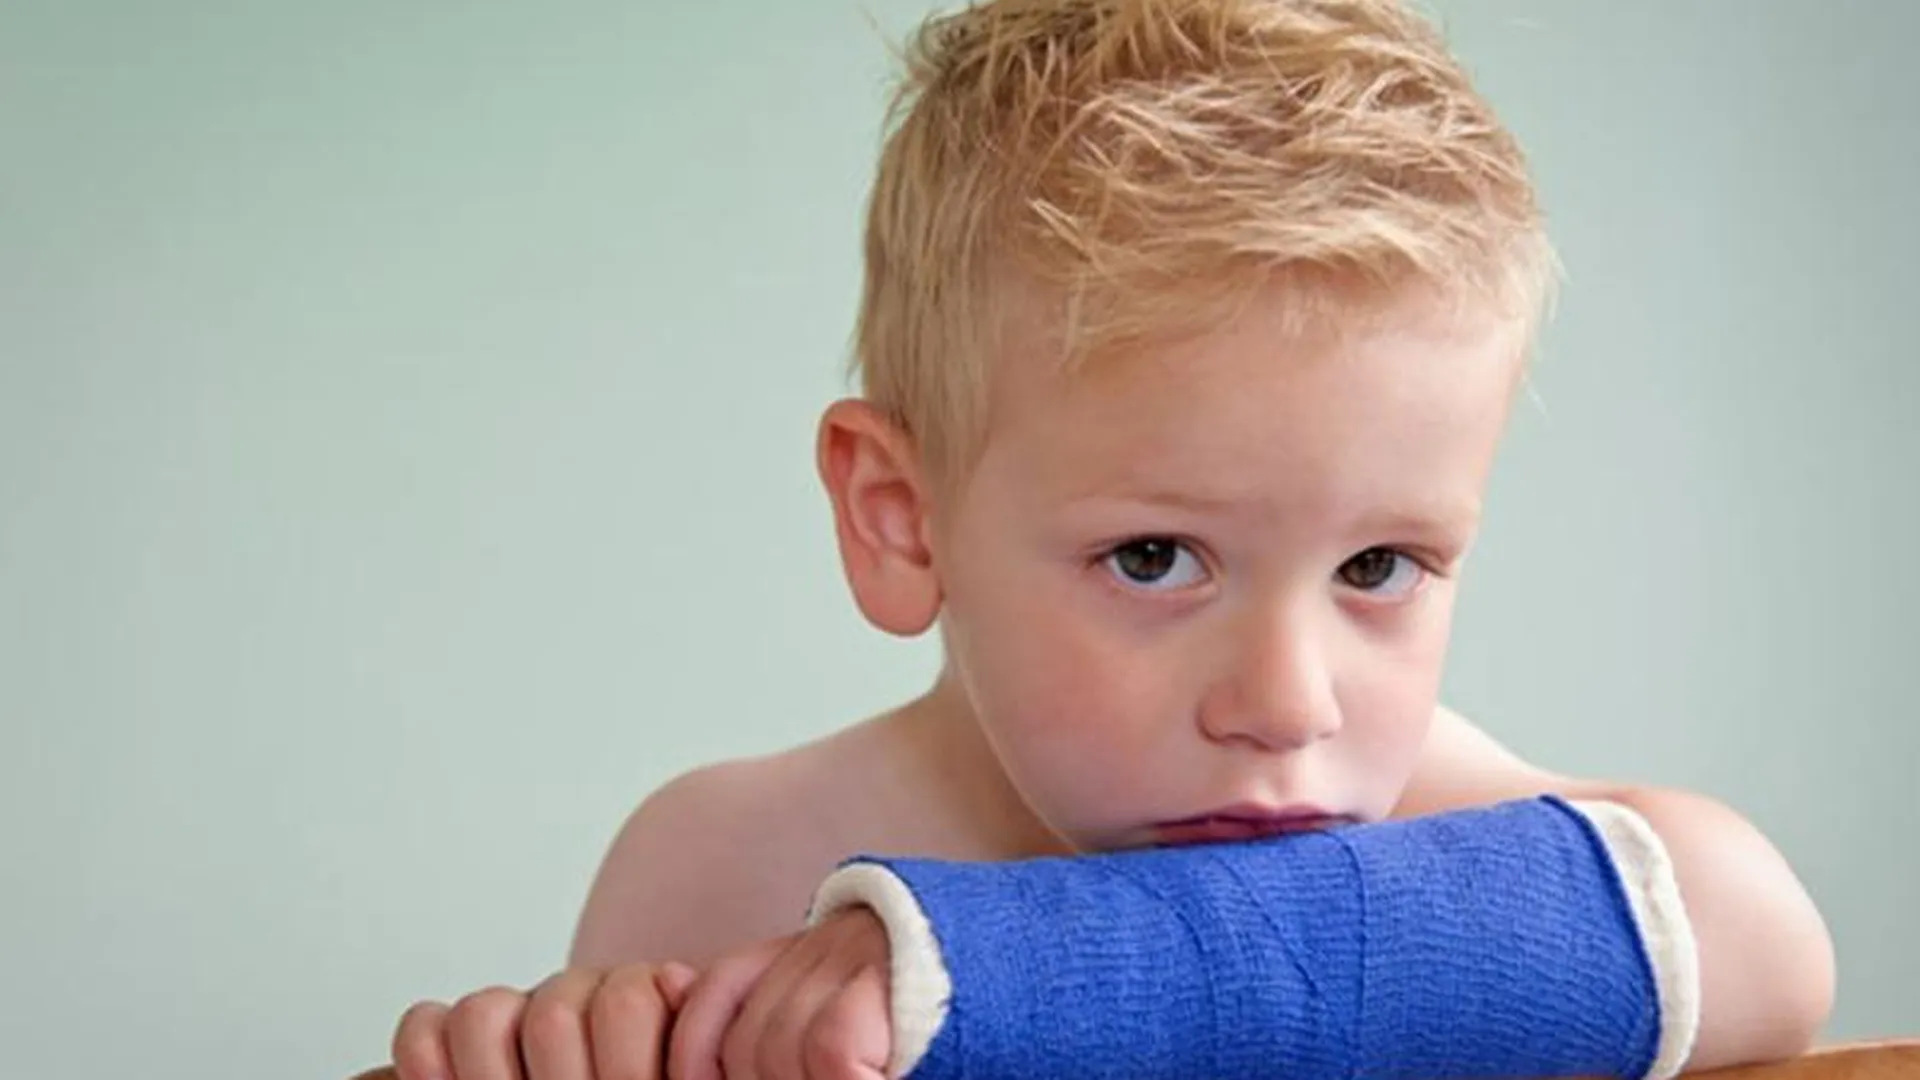 Комната страхов: пять советов о том, как уберечь ребенка от домашнего травматизма